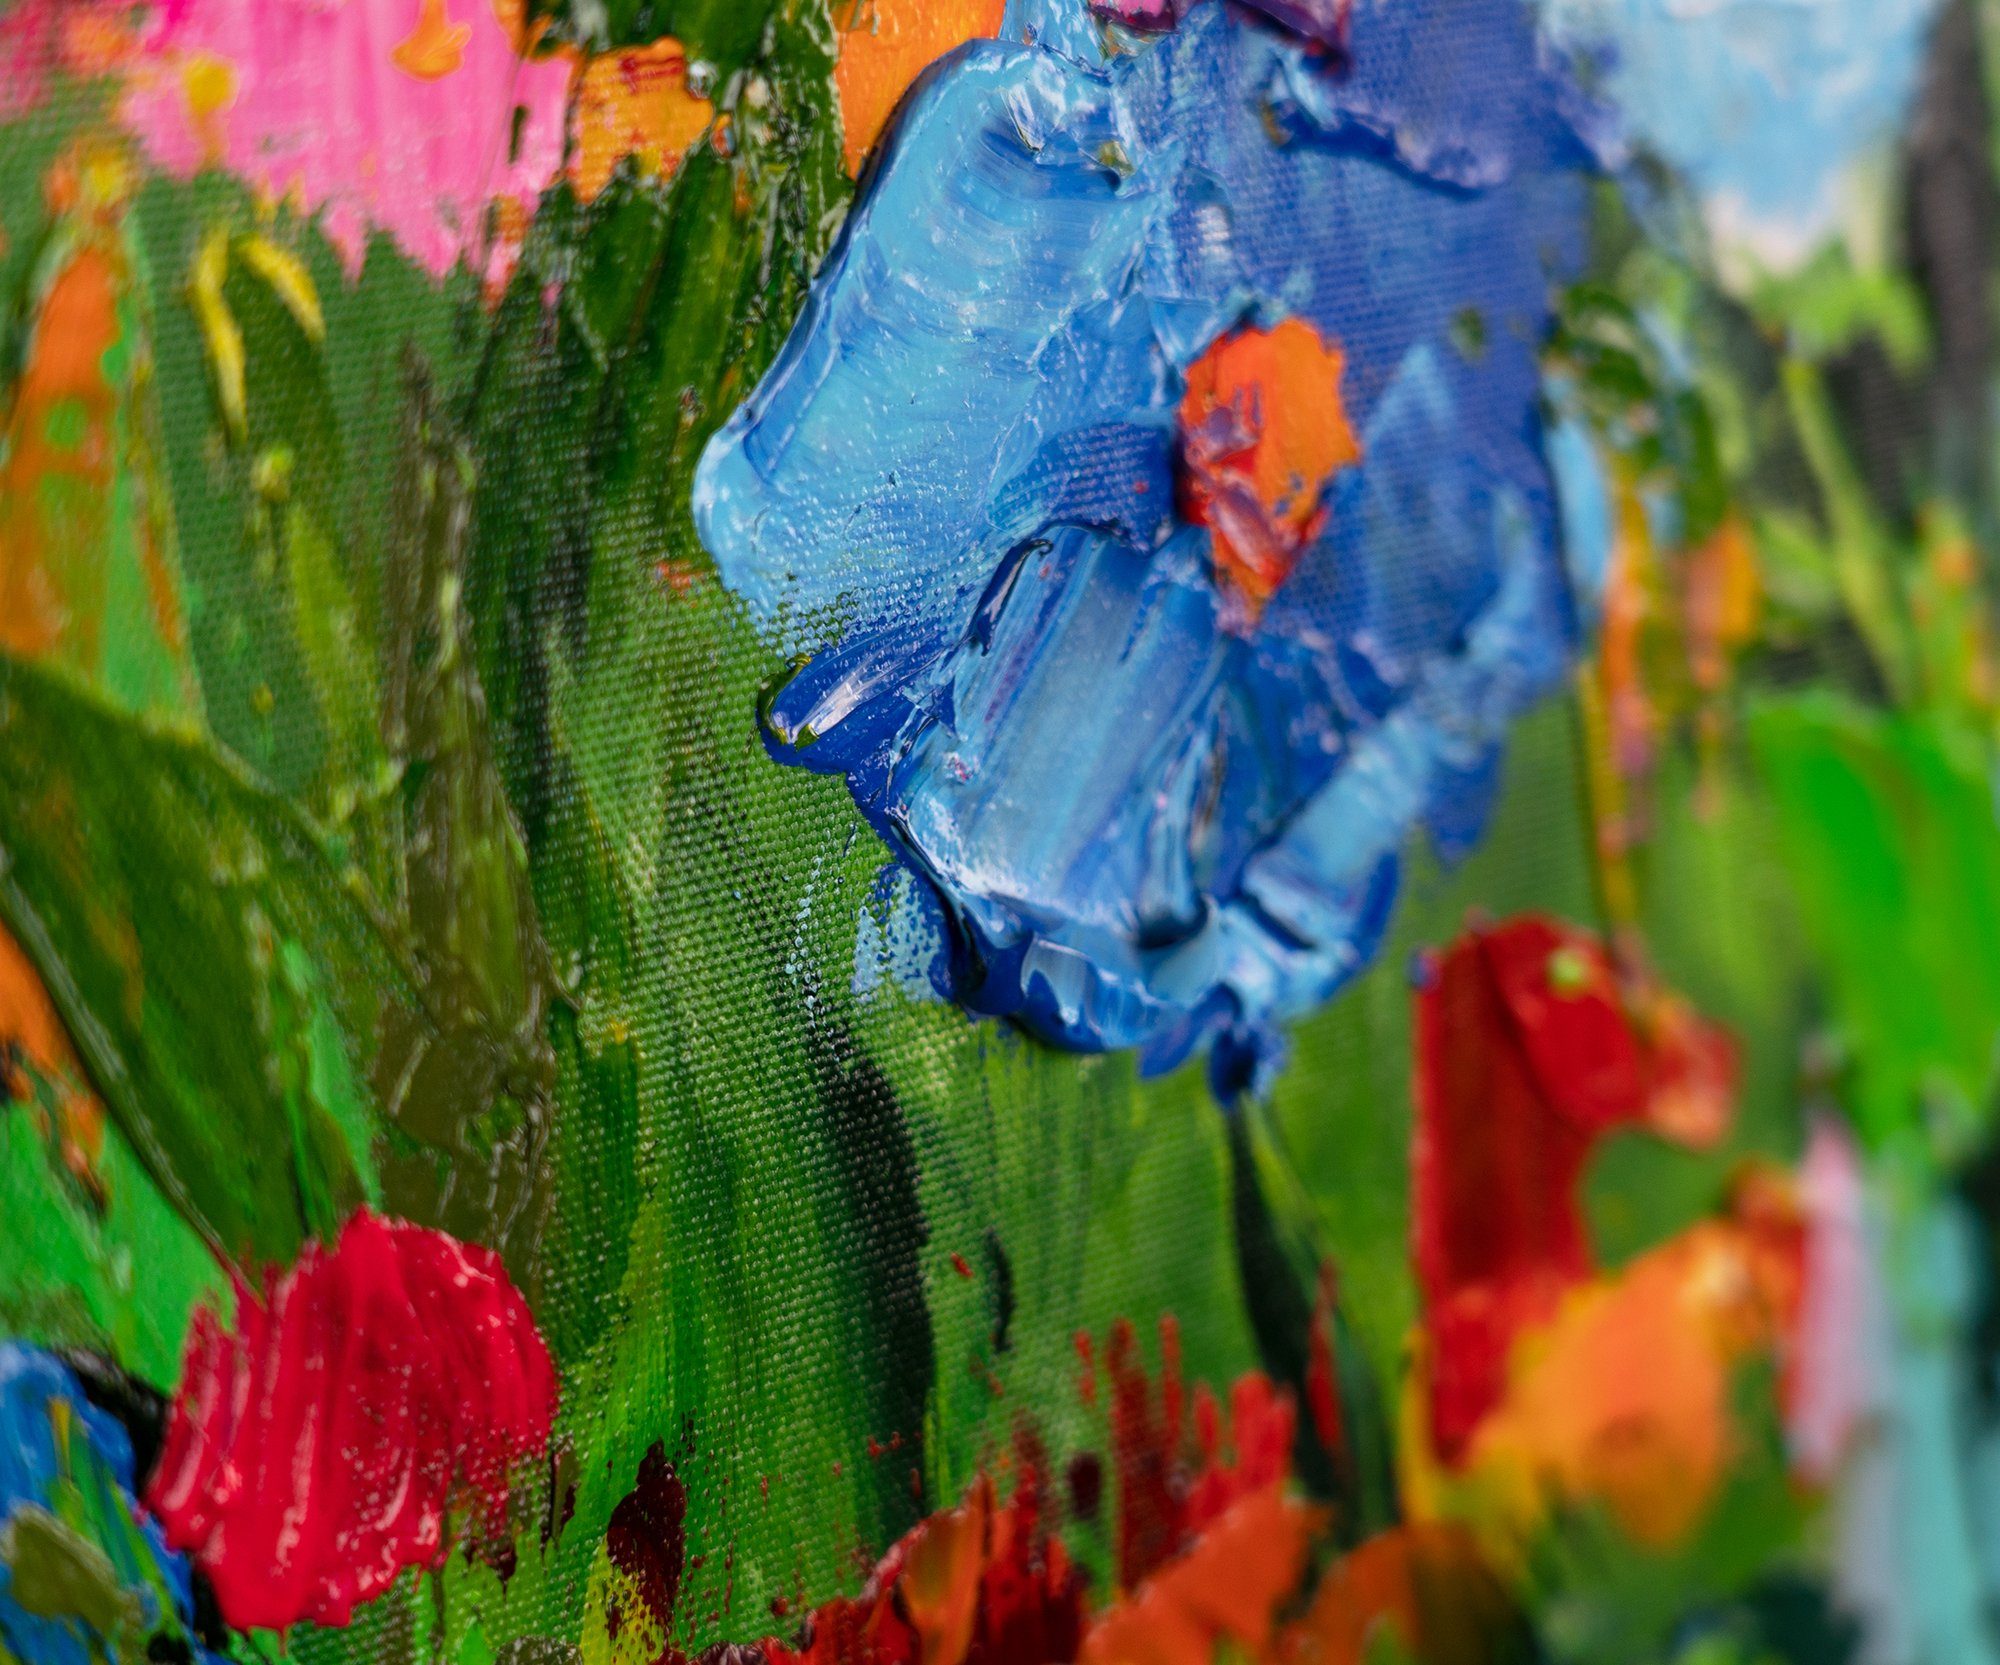 YS-Art Gemälde Blumige Farben, Blumen in Rosa Rahmen Mit